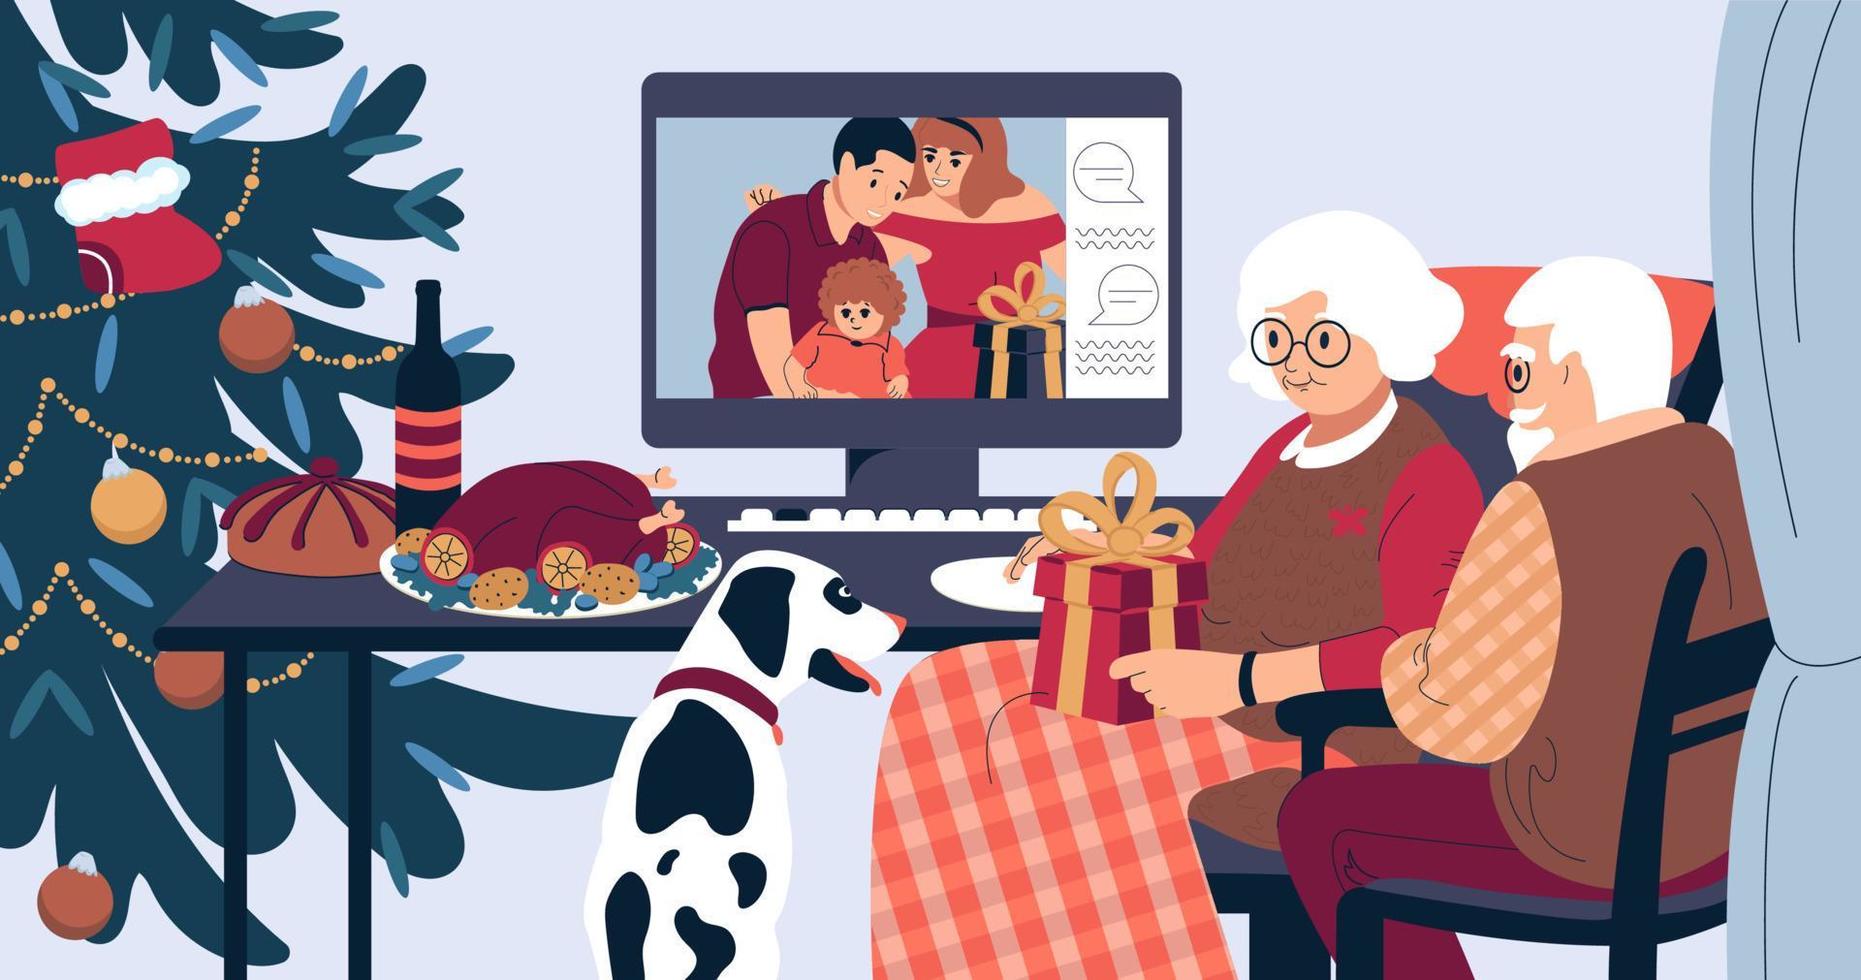 cena navideña familiar en línea. los ancianos hablan con los jóvenes en un monitor de computadora. ilustración vectorial plana. vector